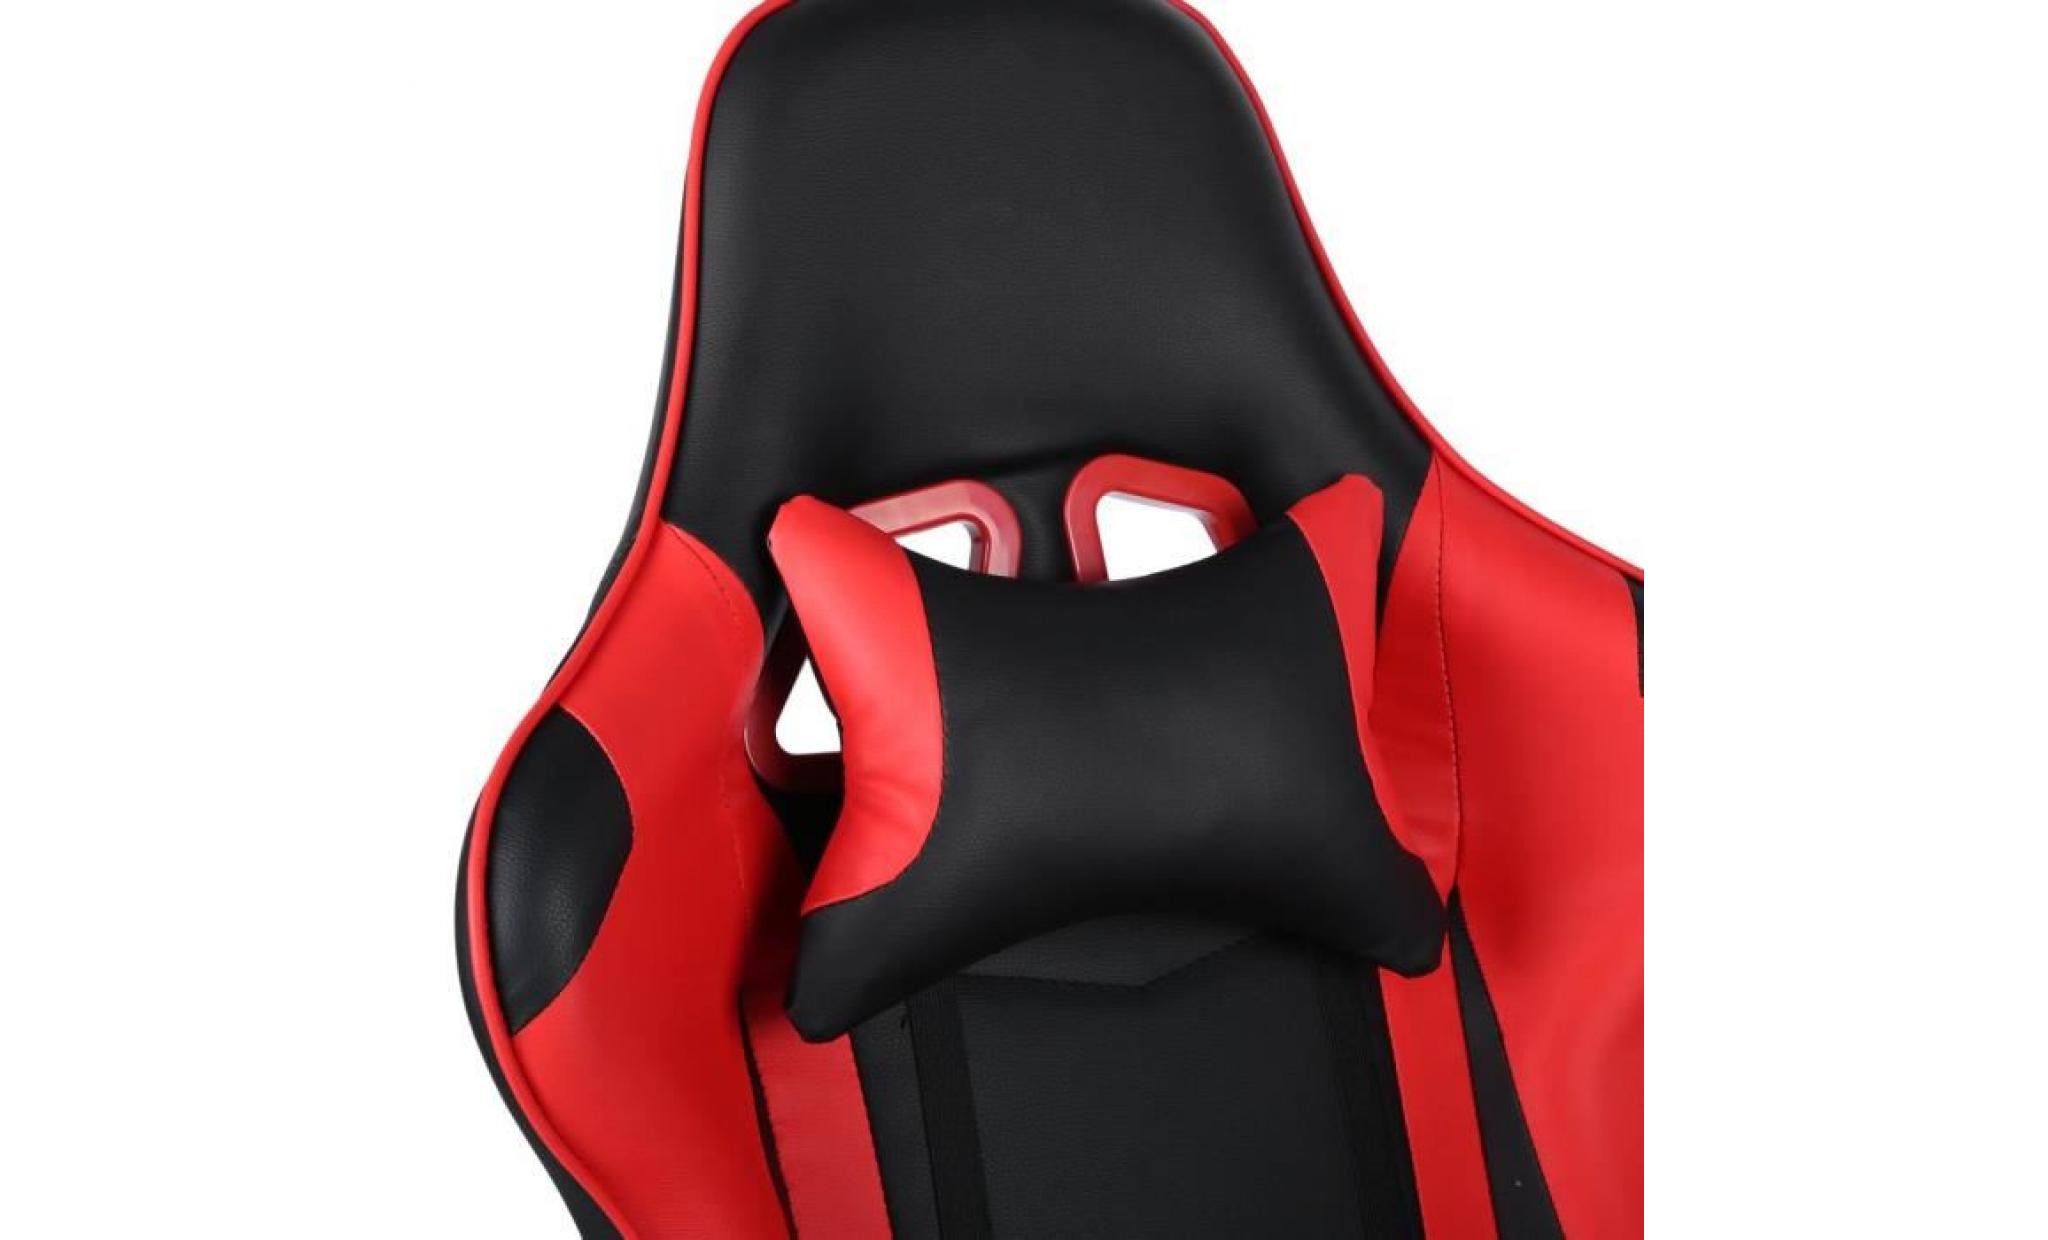 leshp® fauteuil gaming chaise de jeu course super confortable avec appui tête support lombaire hauteur réglable rotation de 360 pas cher